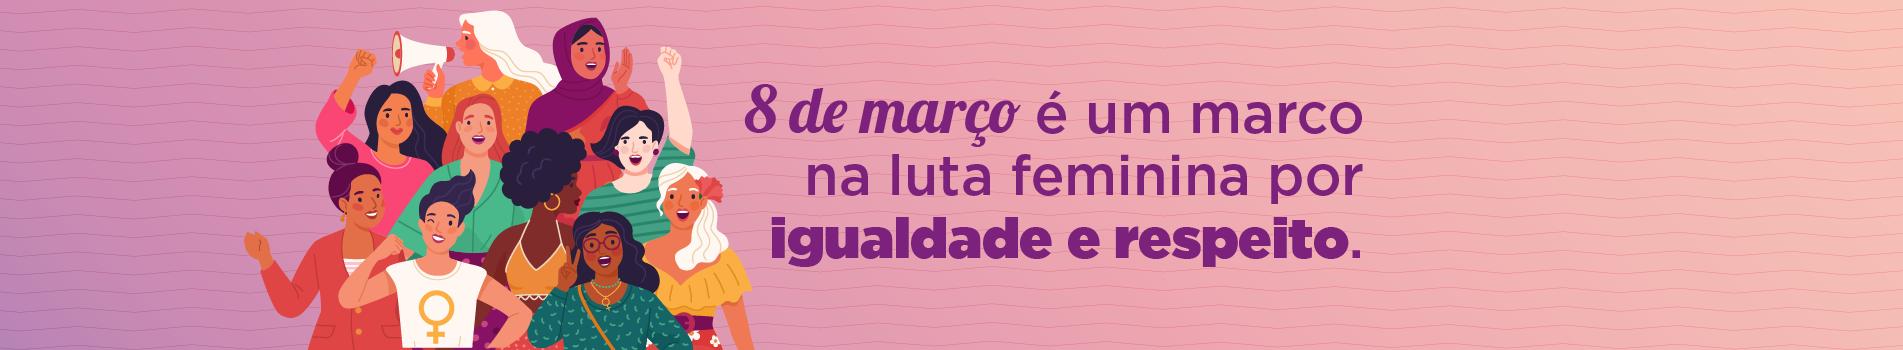 8 de março é um marco na luta feminina por igualdade e respeito